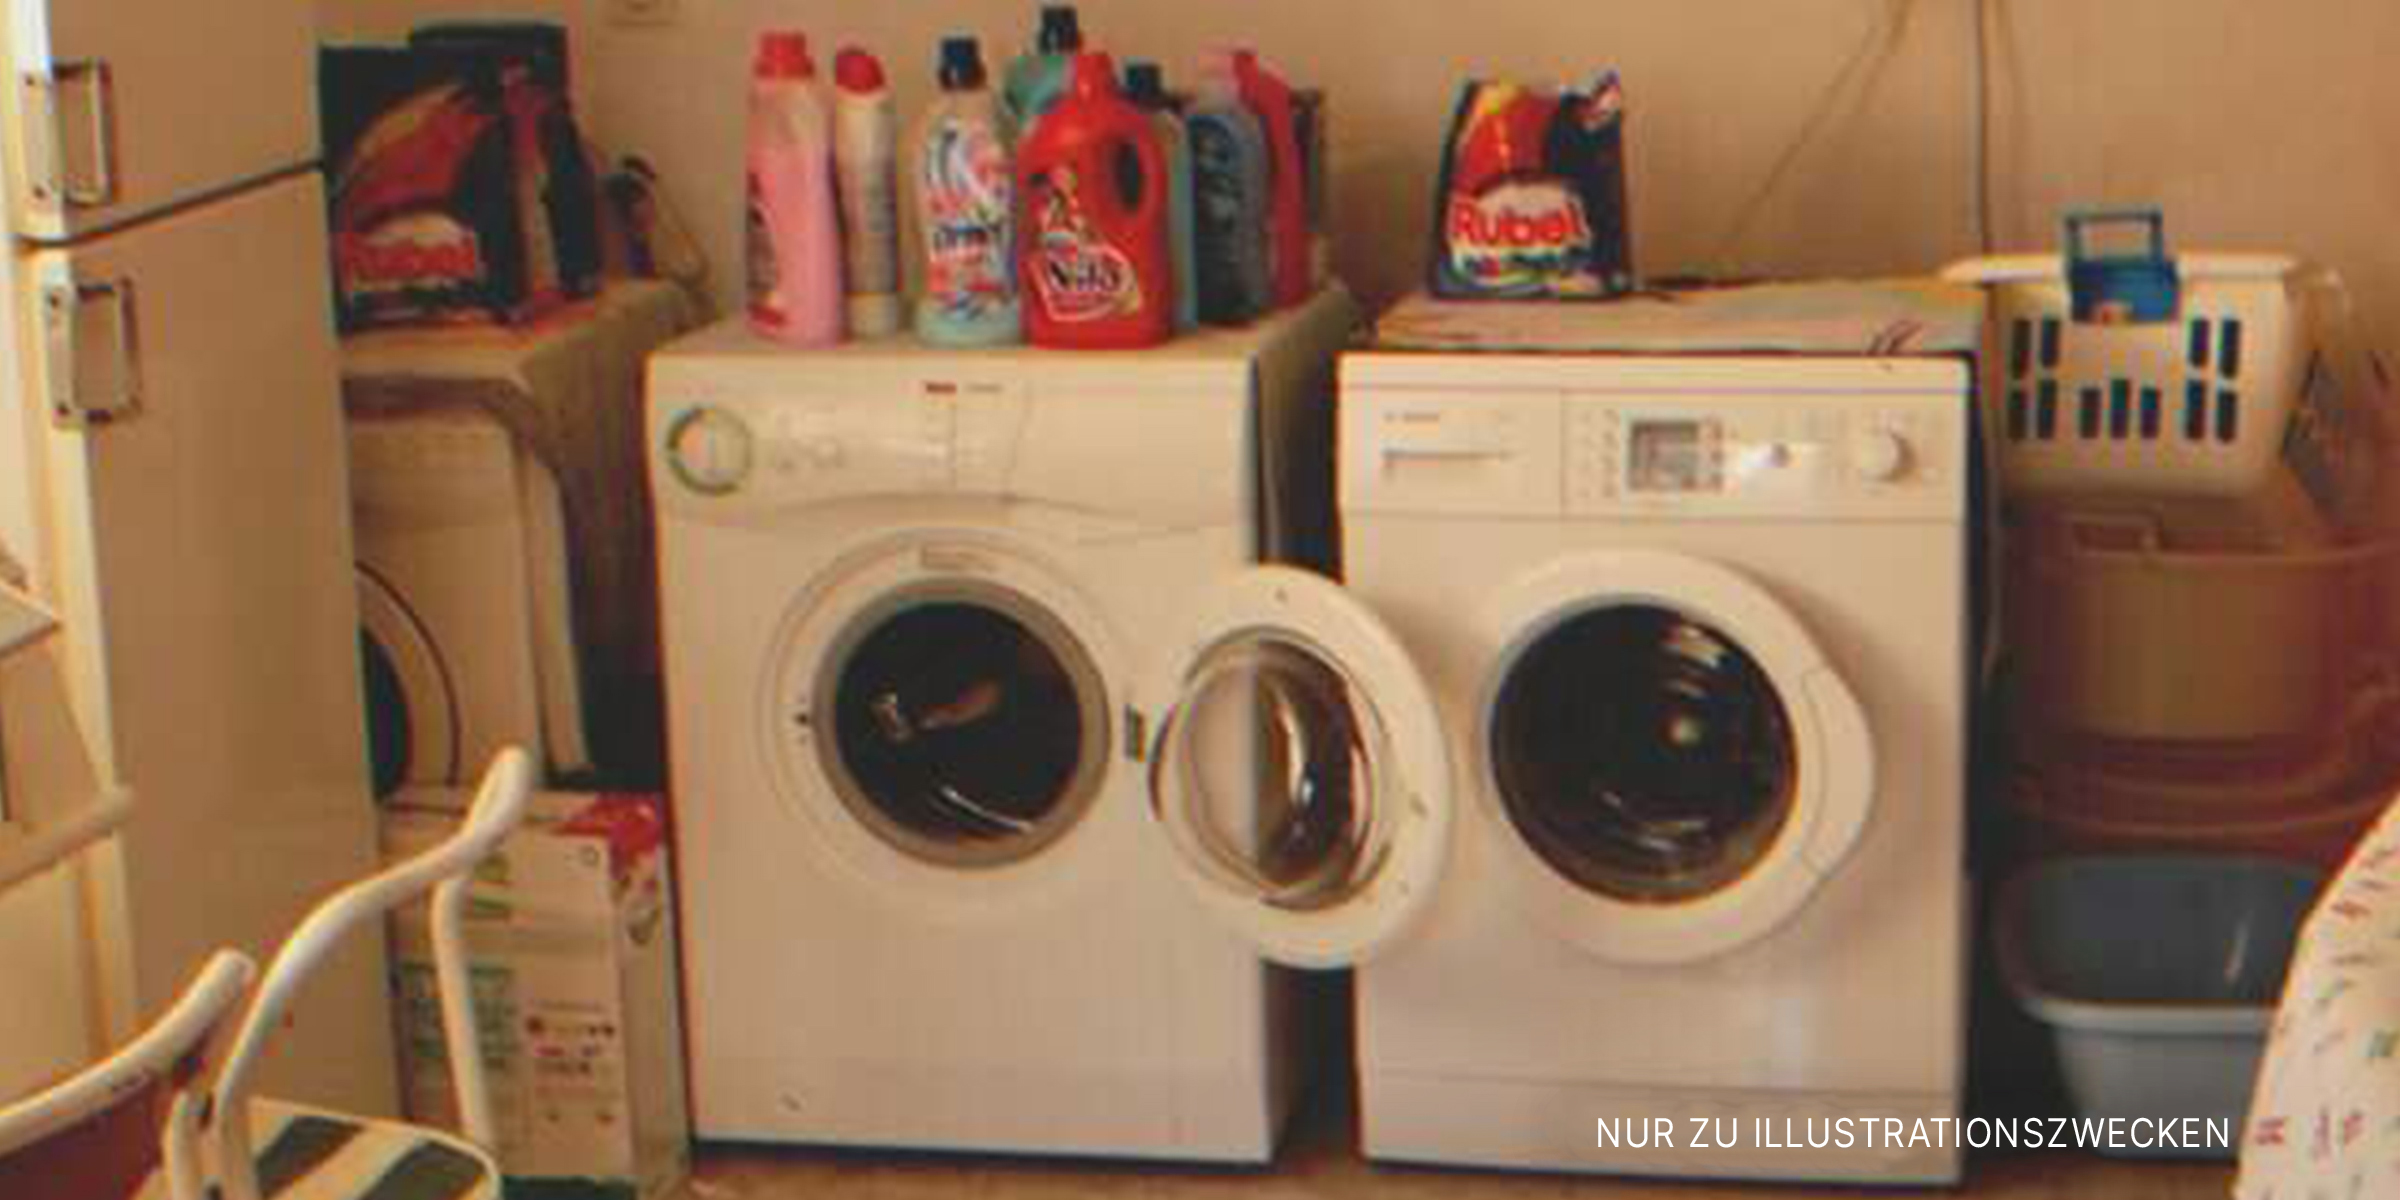 Waschmaschinen, auf denen Flaschen mit Waschmitteln stehen. | Quelle: Flickr / auxesis (CC BY 2.0)